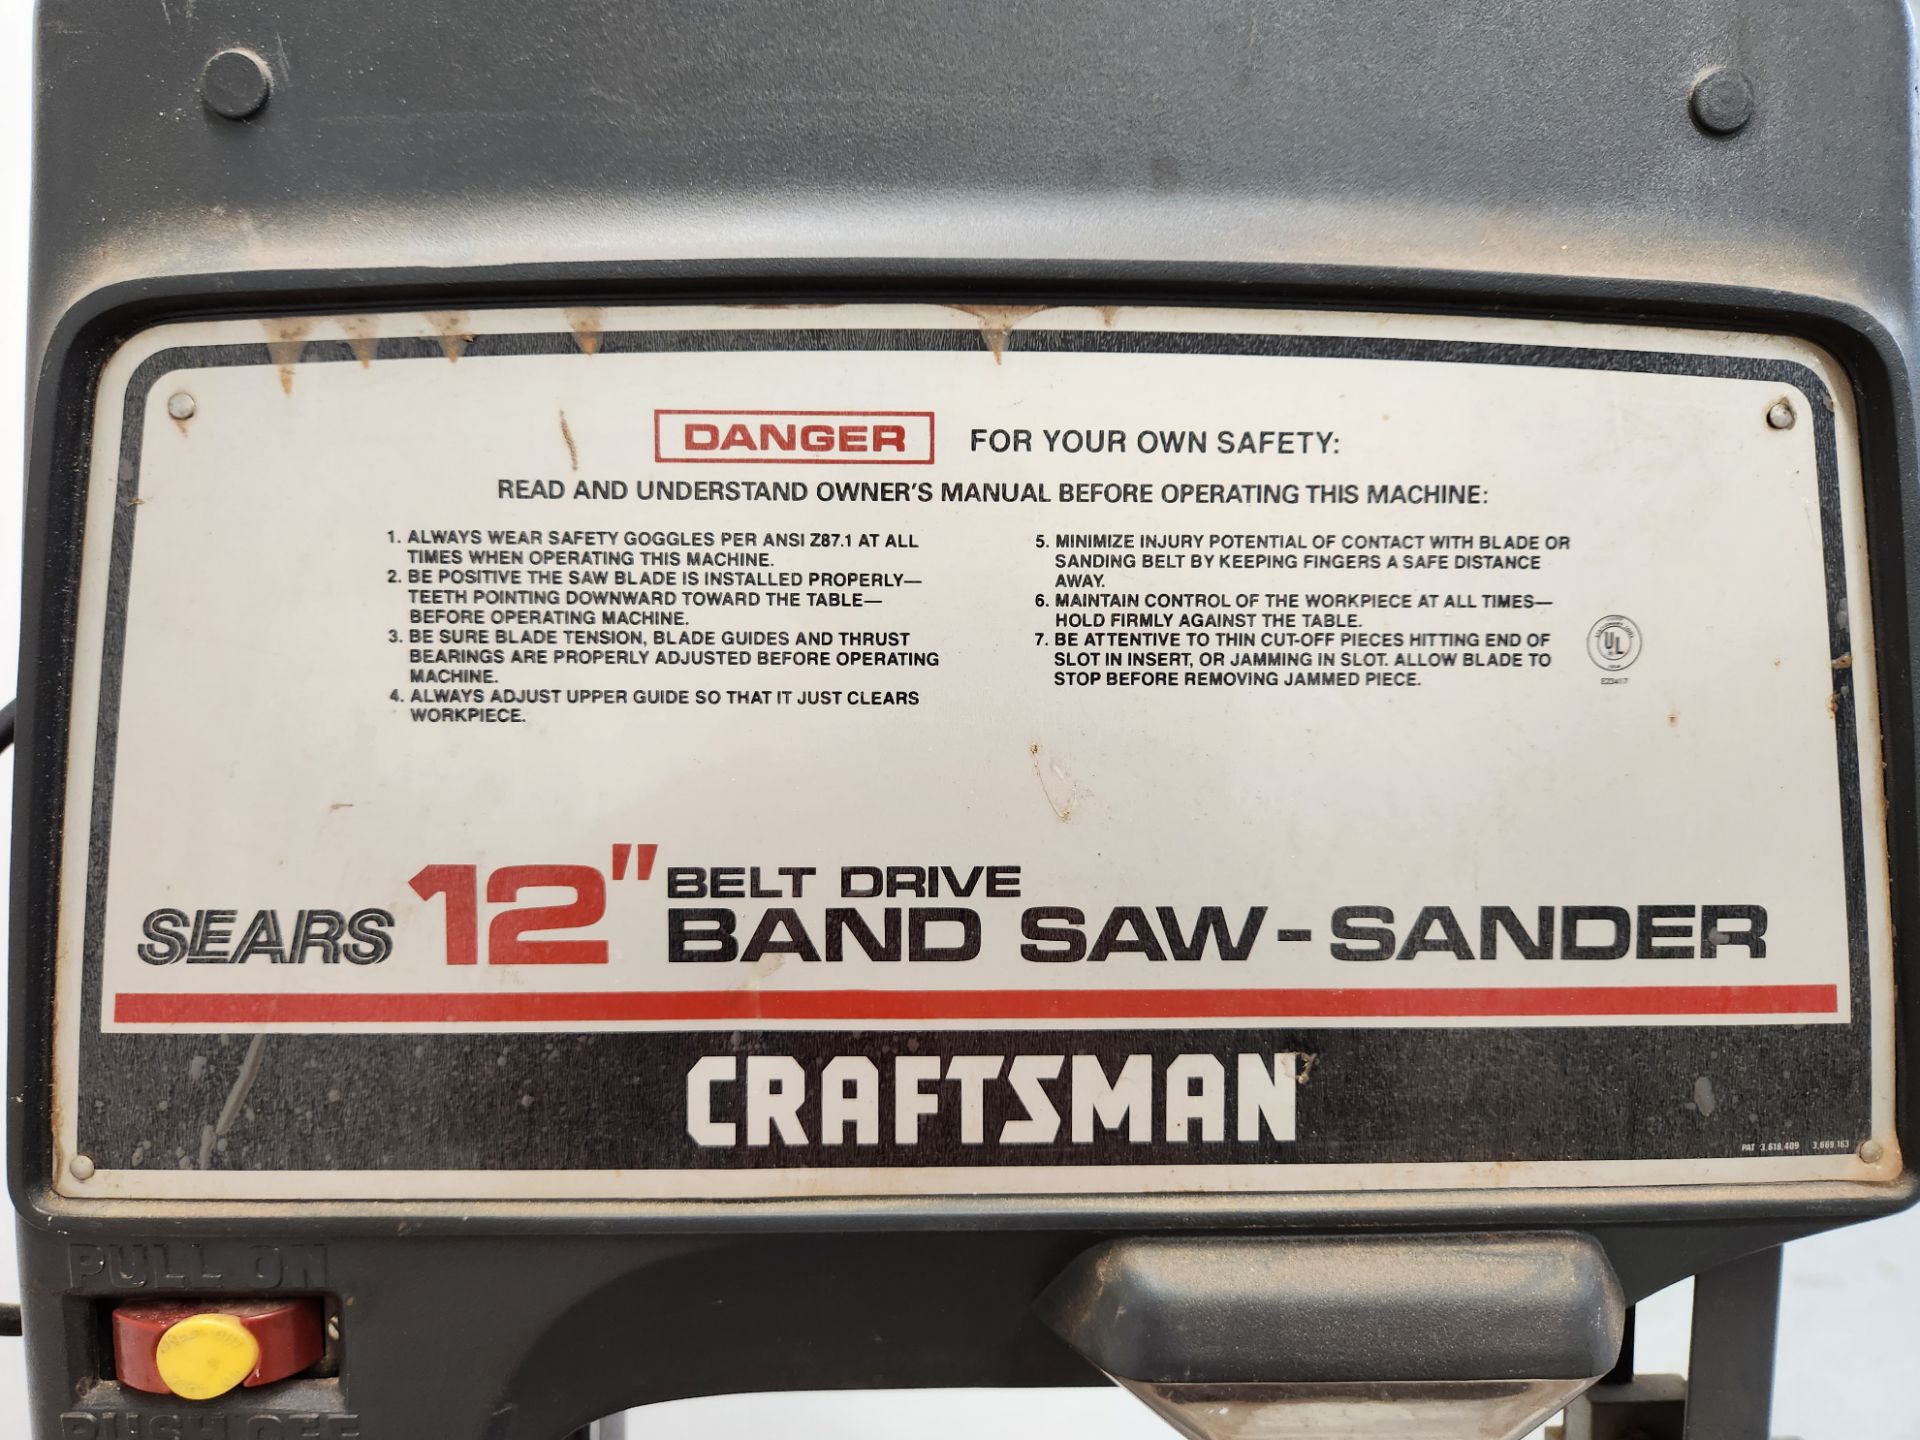 Craftsman Sears 12" Belt Drive Bandsaw-Sander - Image 6 of 6